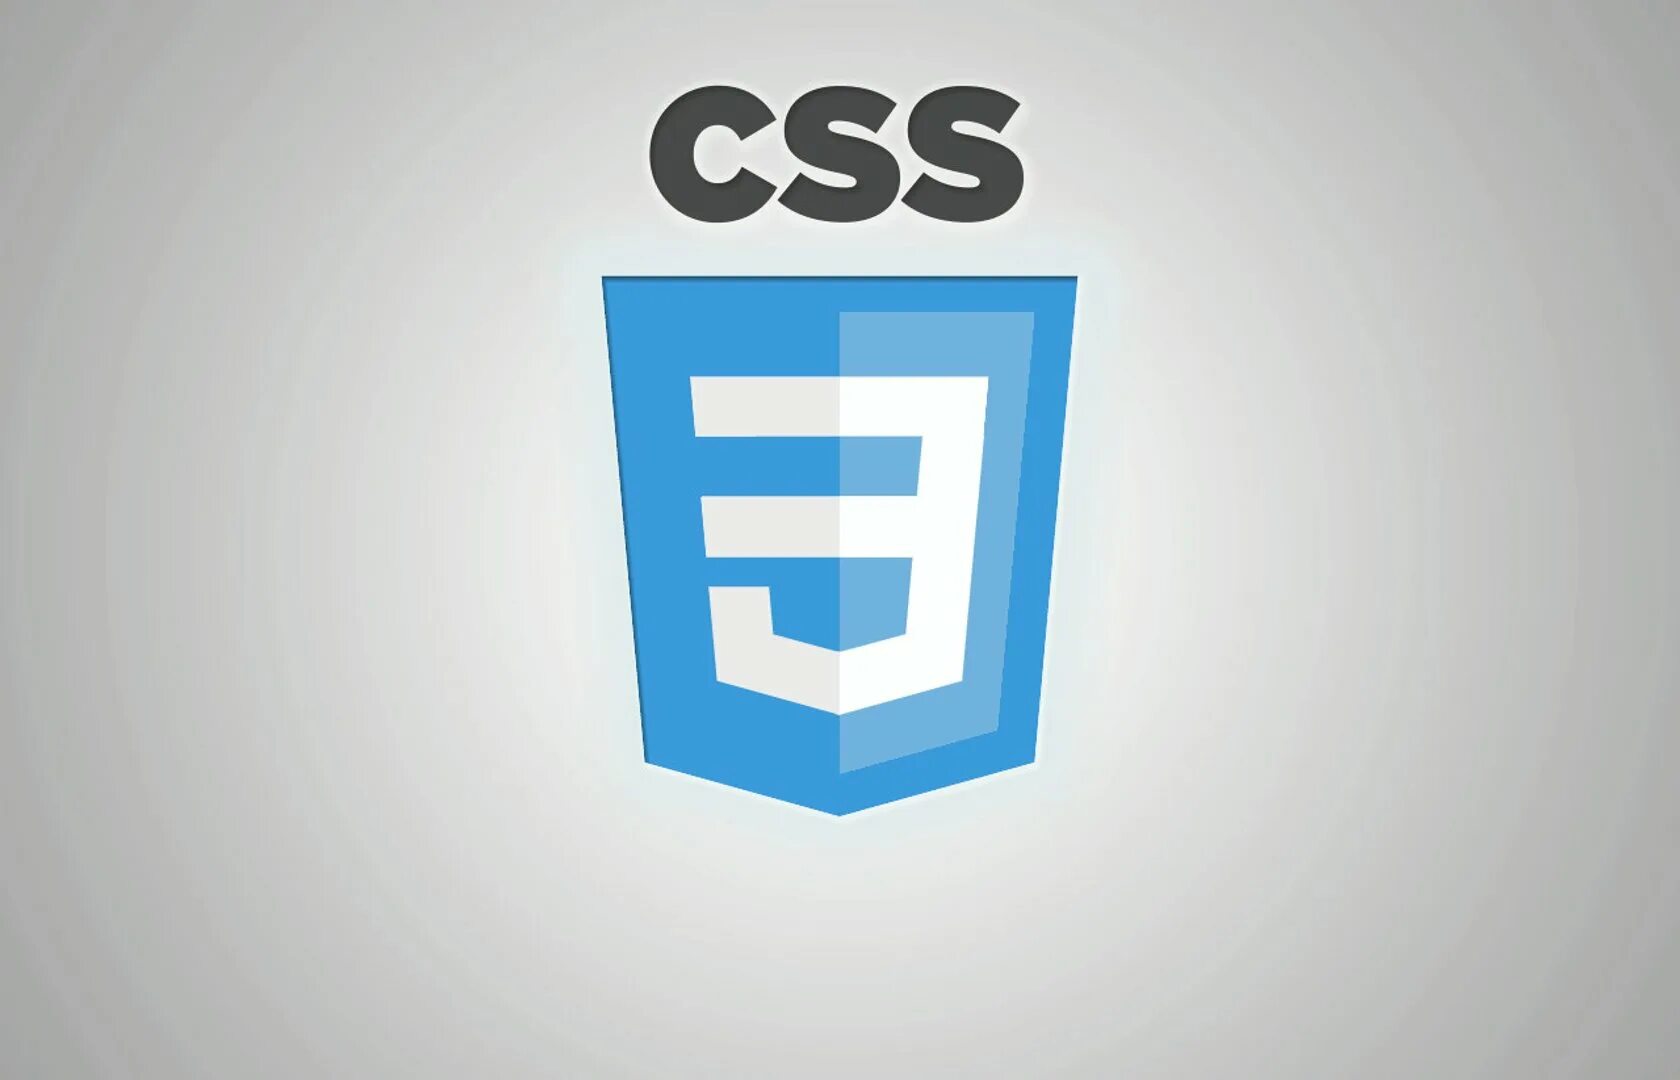 Css зависимости. Css3 логотип. Значок css3. CSS эмблема. CSS лого.